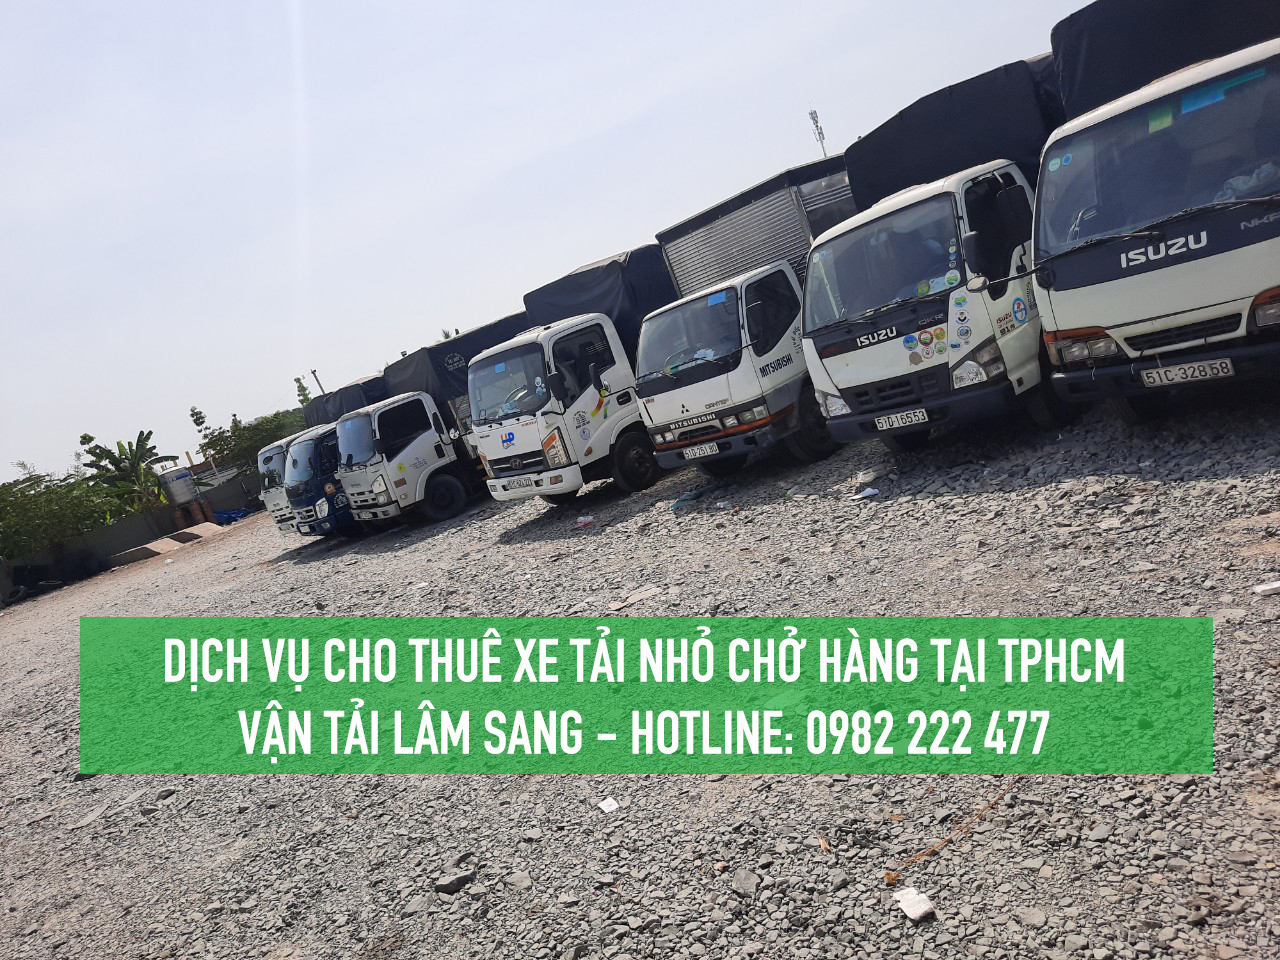 Dịch vụ cho thuê xe tải nhỏ chở hàng giá rẻ tại TPHCM